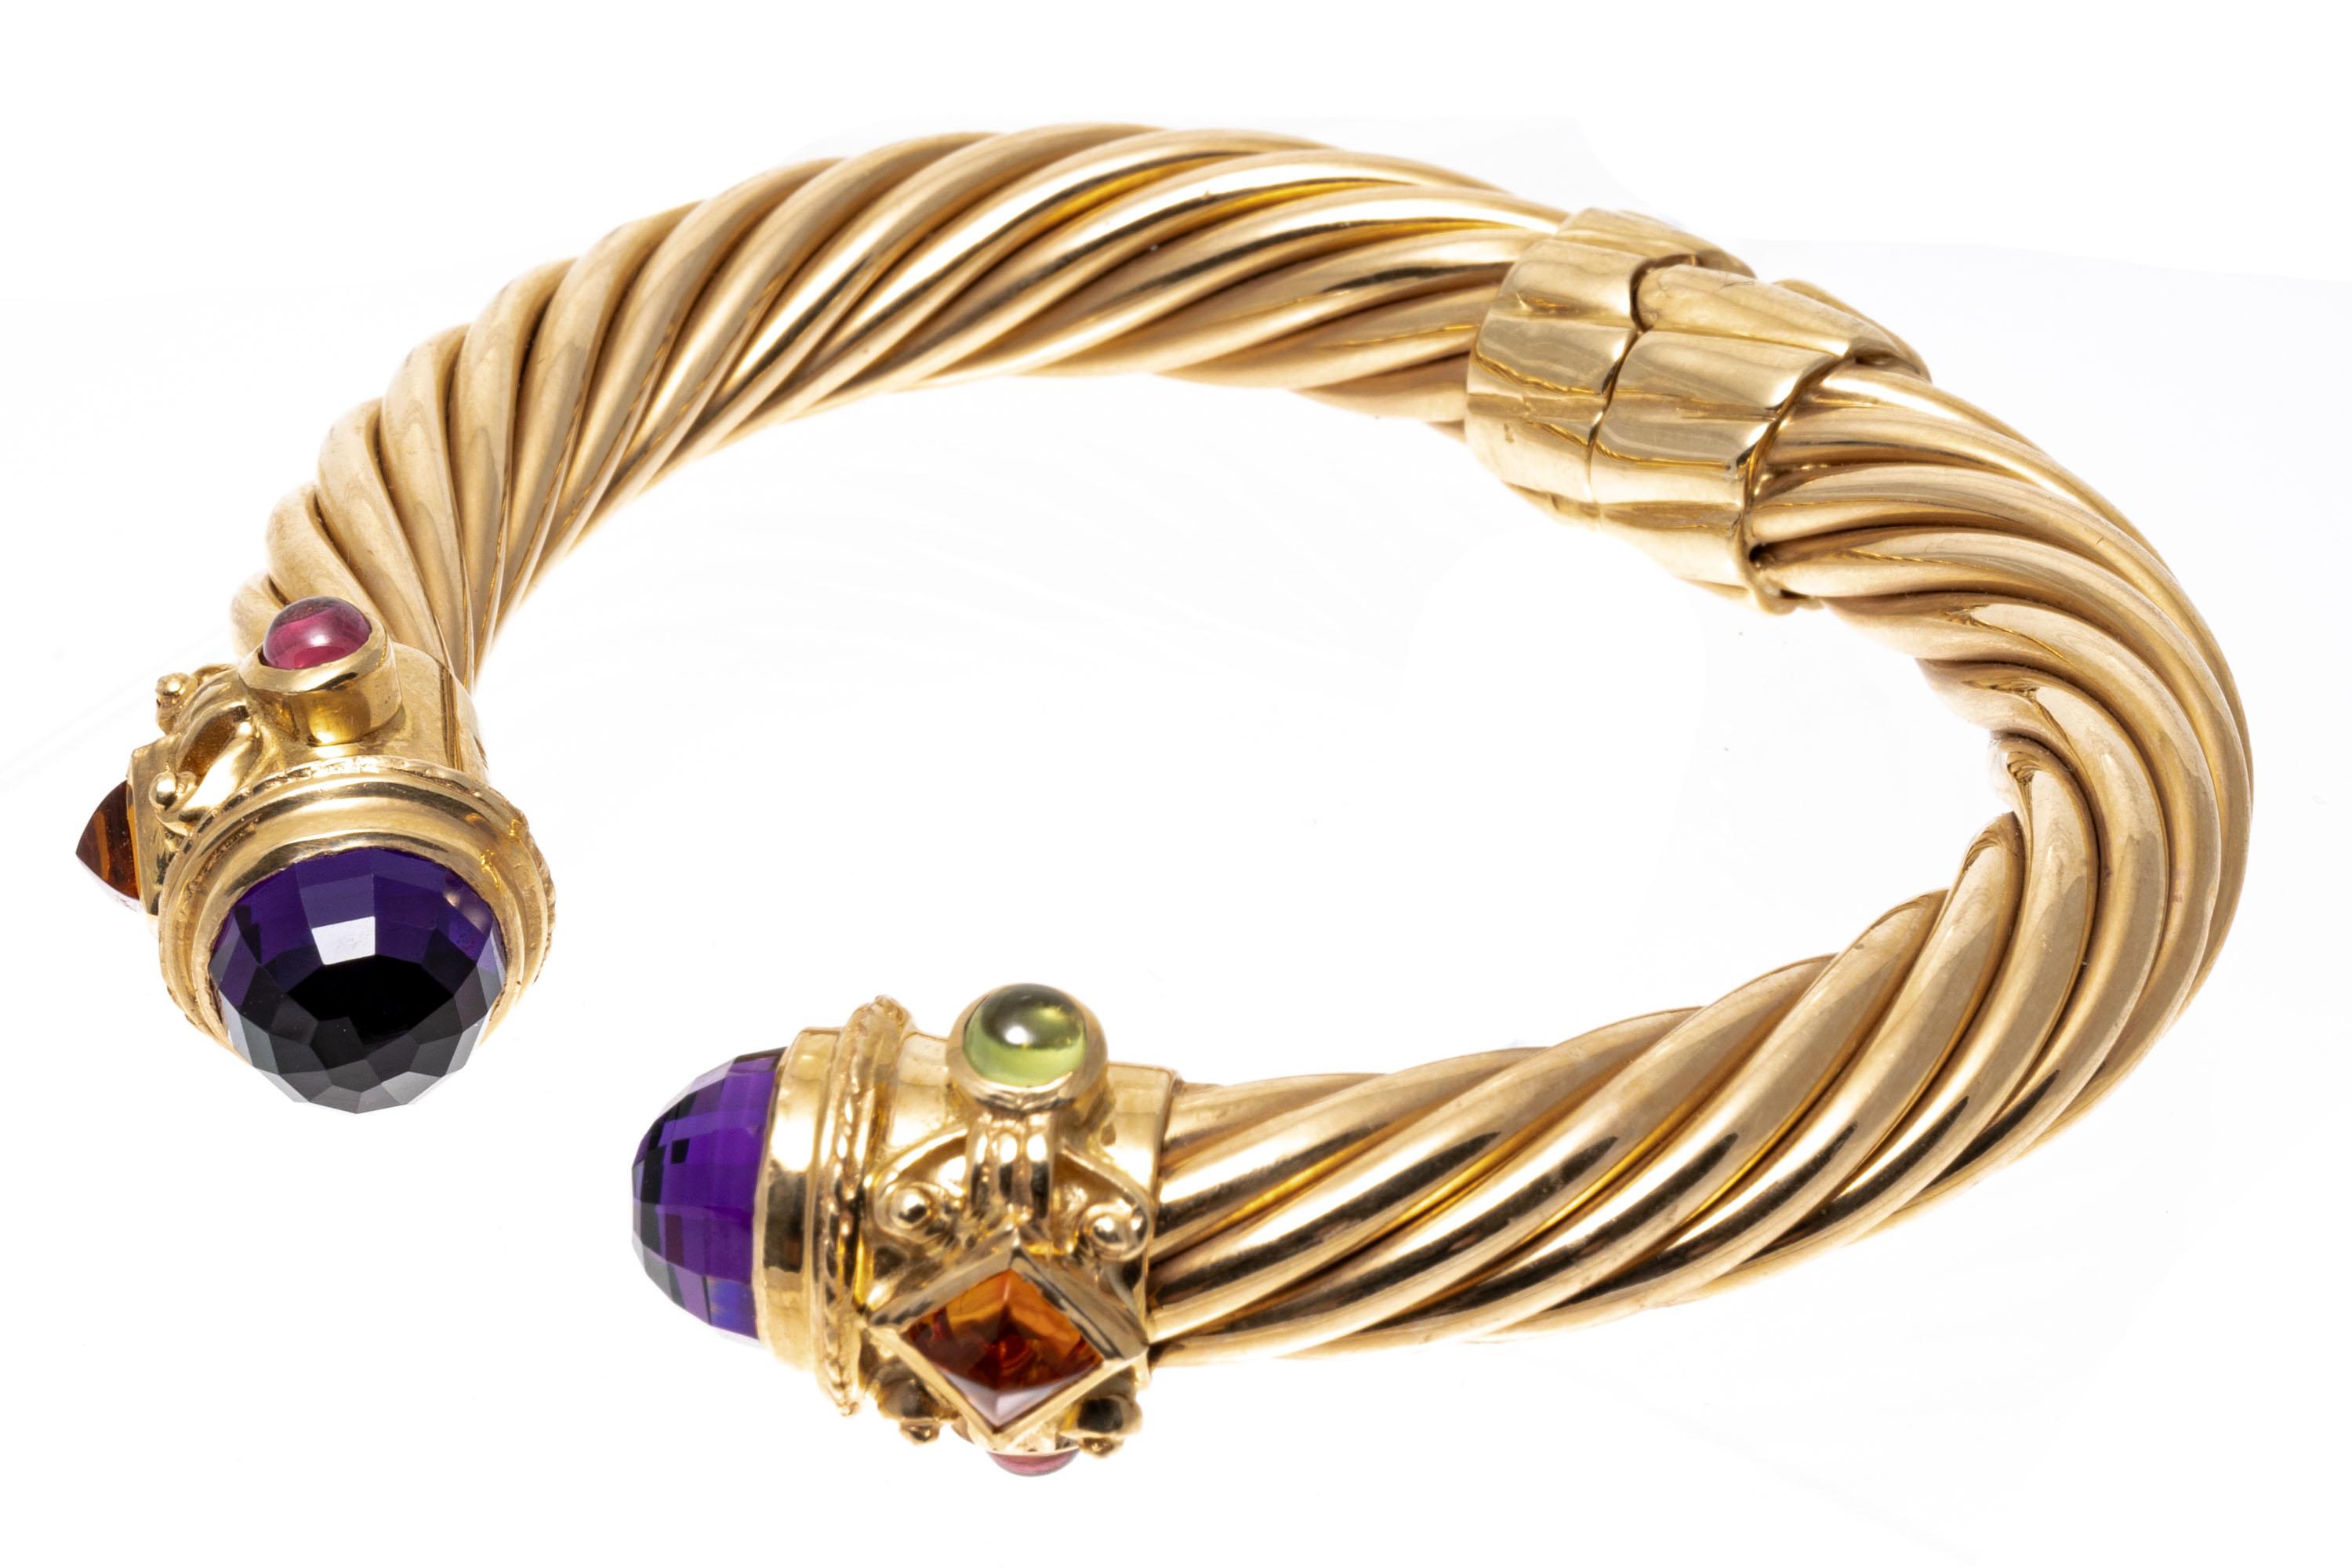 14k gold hinged bangle bracelet